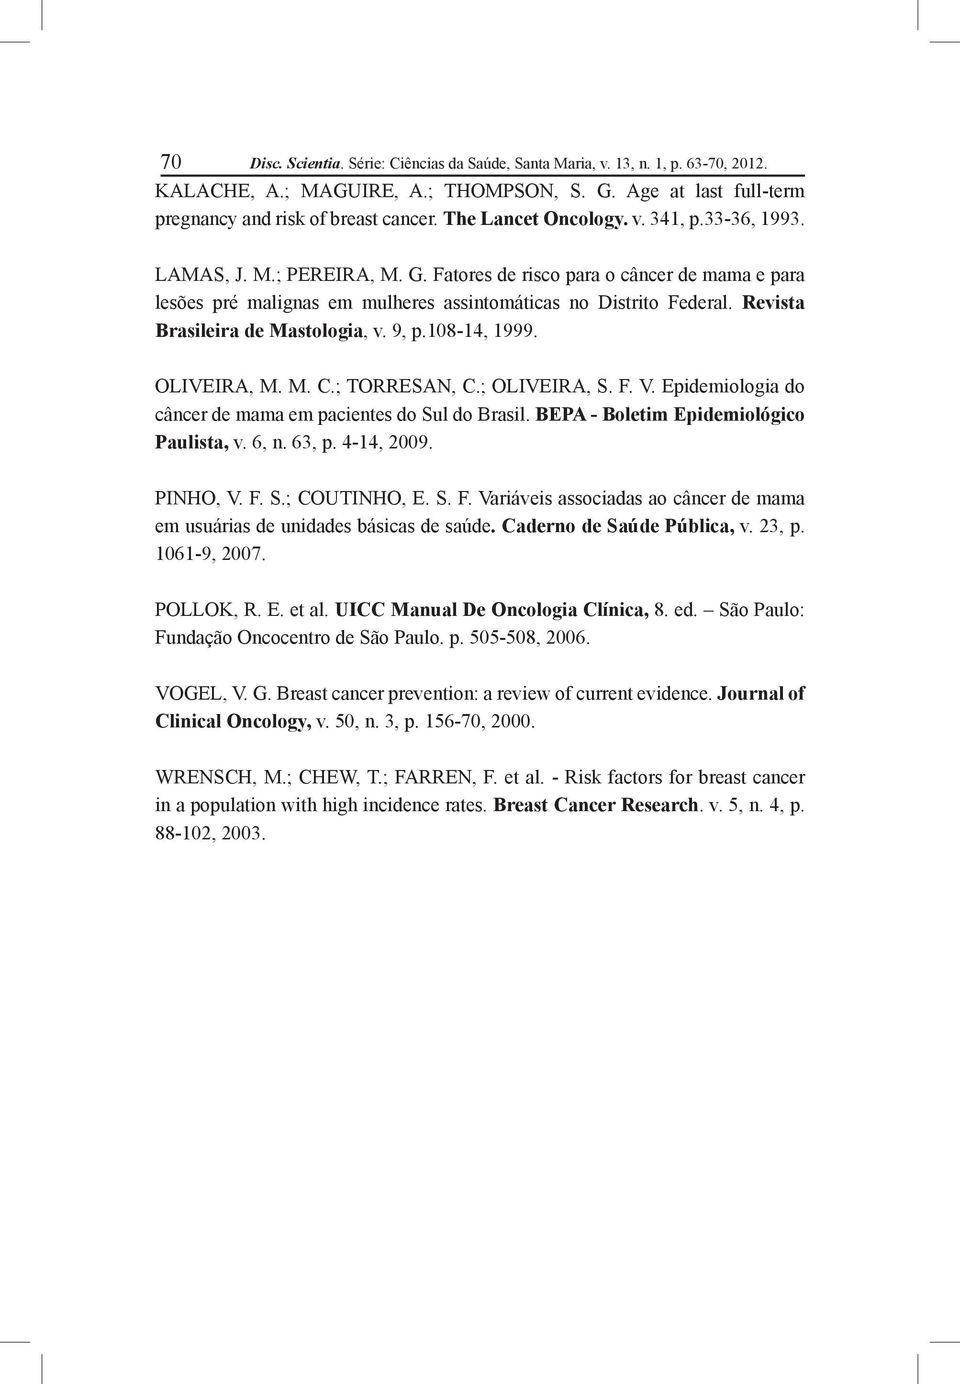 Revista Brasileira de Mastologia, v. 9, p.108-14, 1999. OLIVEIRA, M. M. C.; TORRESAN, C.; OLIVEIRA, S. F. V. Epidemiologia do câncer de mama em pacientes do Sul do Brasil.